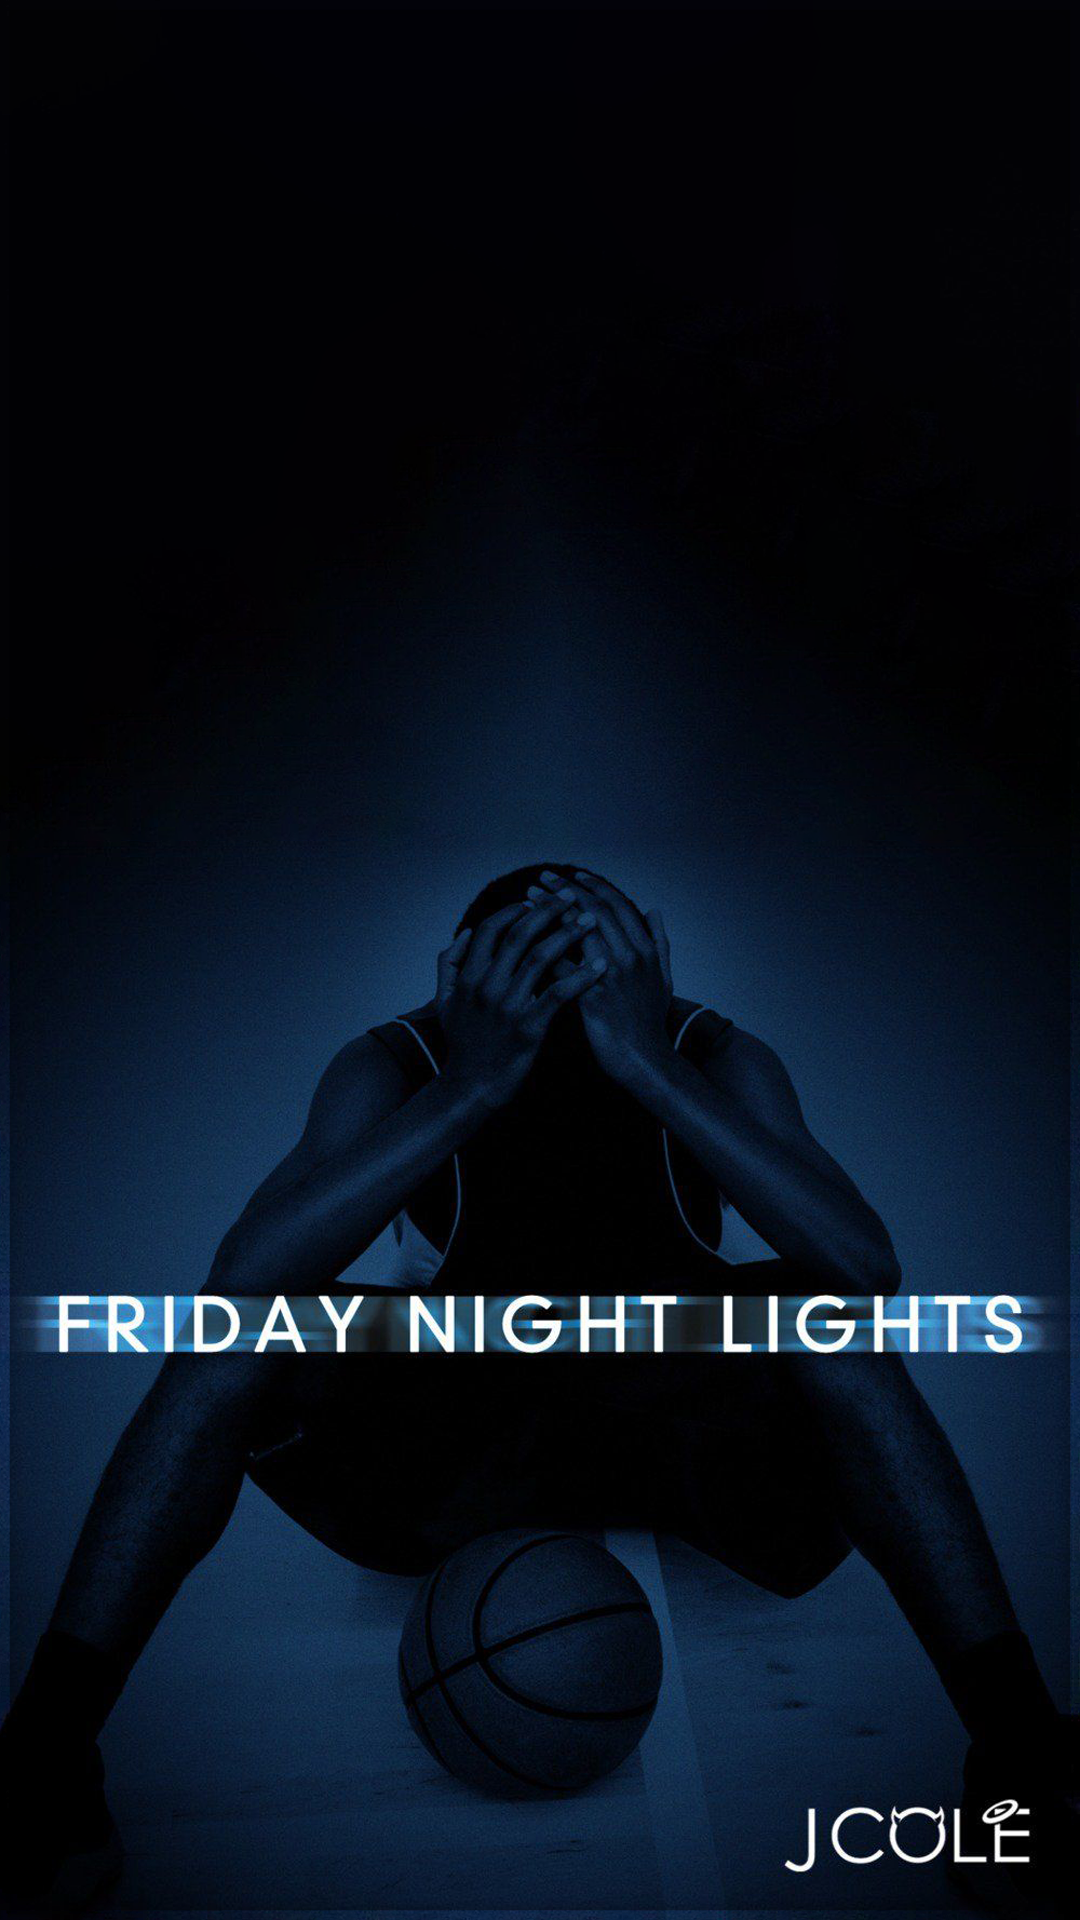 Friday Night Lights Wallpaper J Cole - HD Wallpaper 